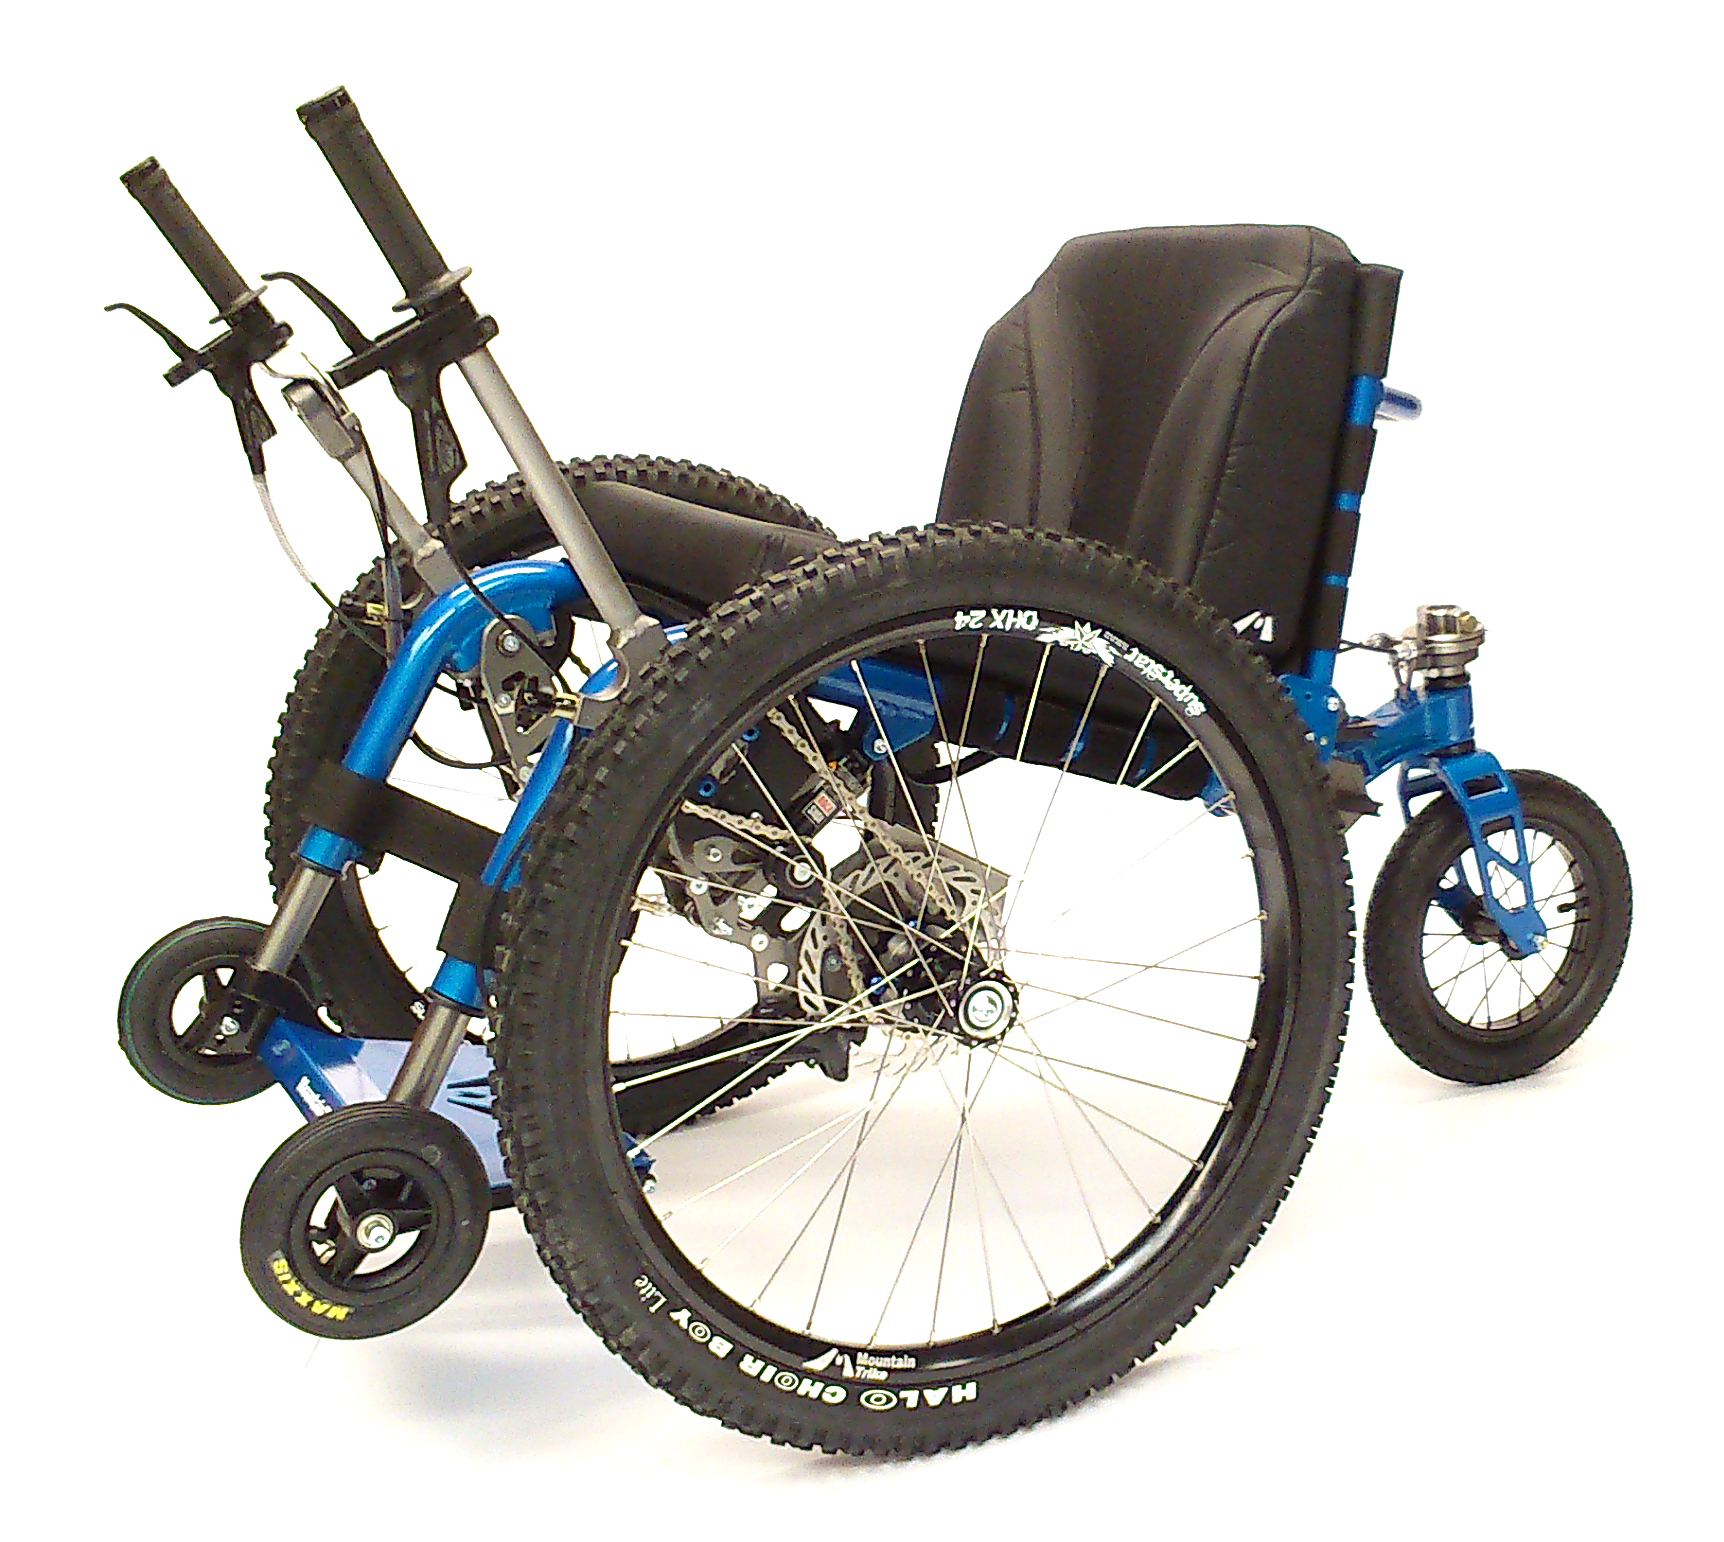 USA Mountain Trike distributor to attend Houston, Abilities Expo